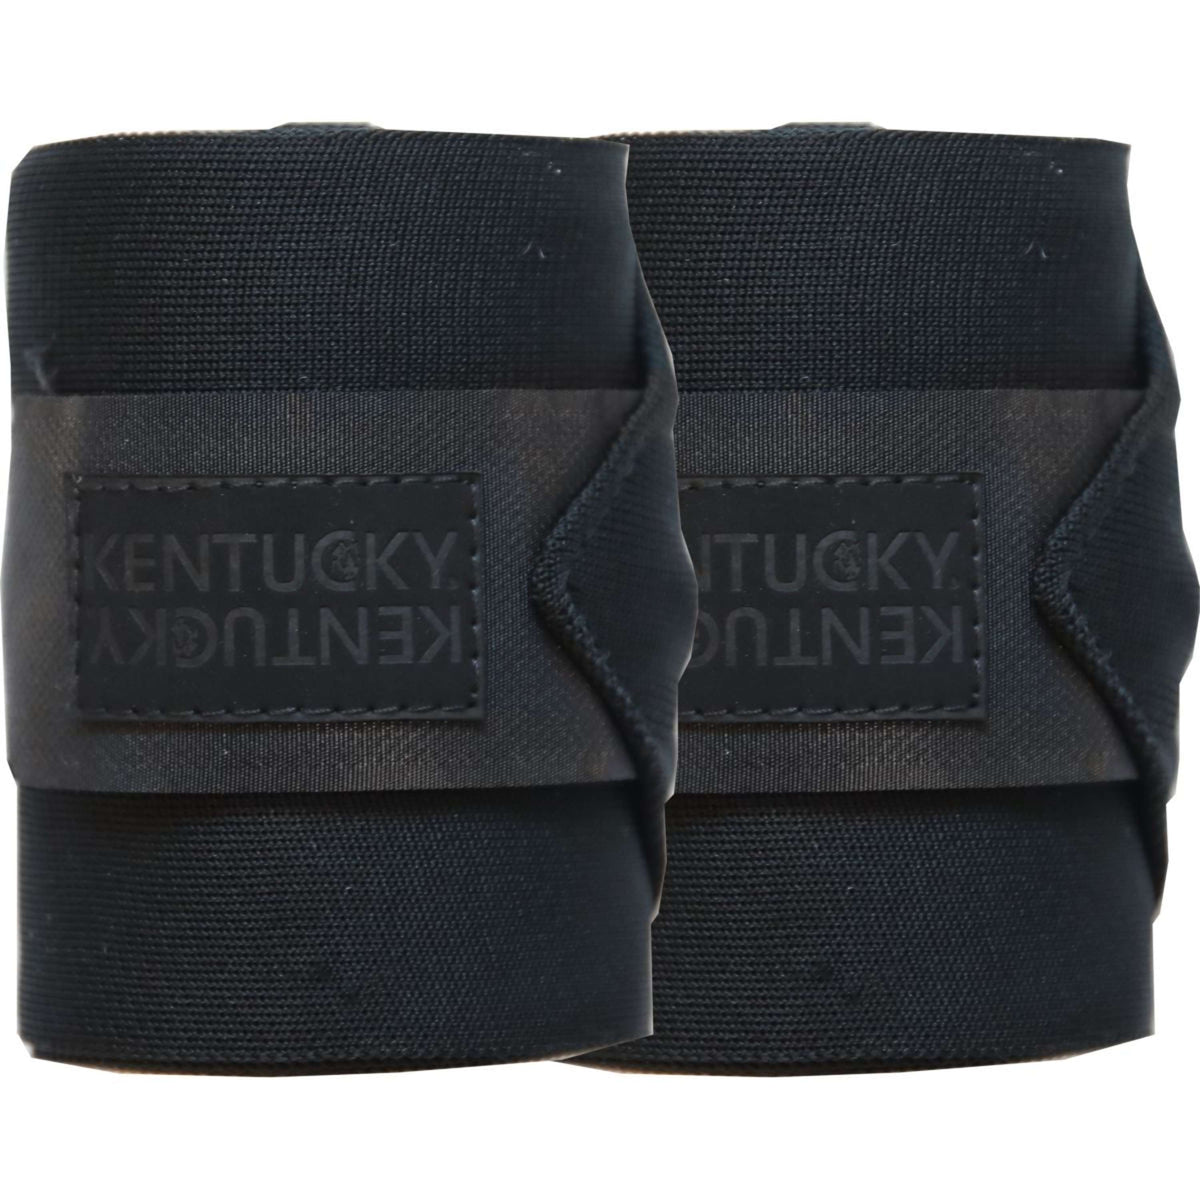 Kentucky Bandagen Repellent Schwarz